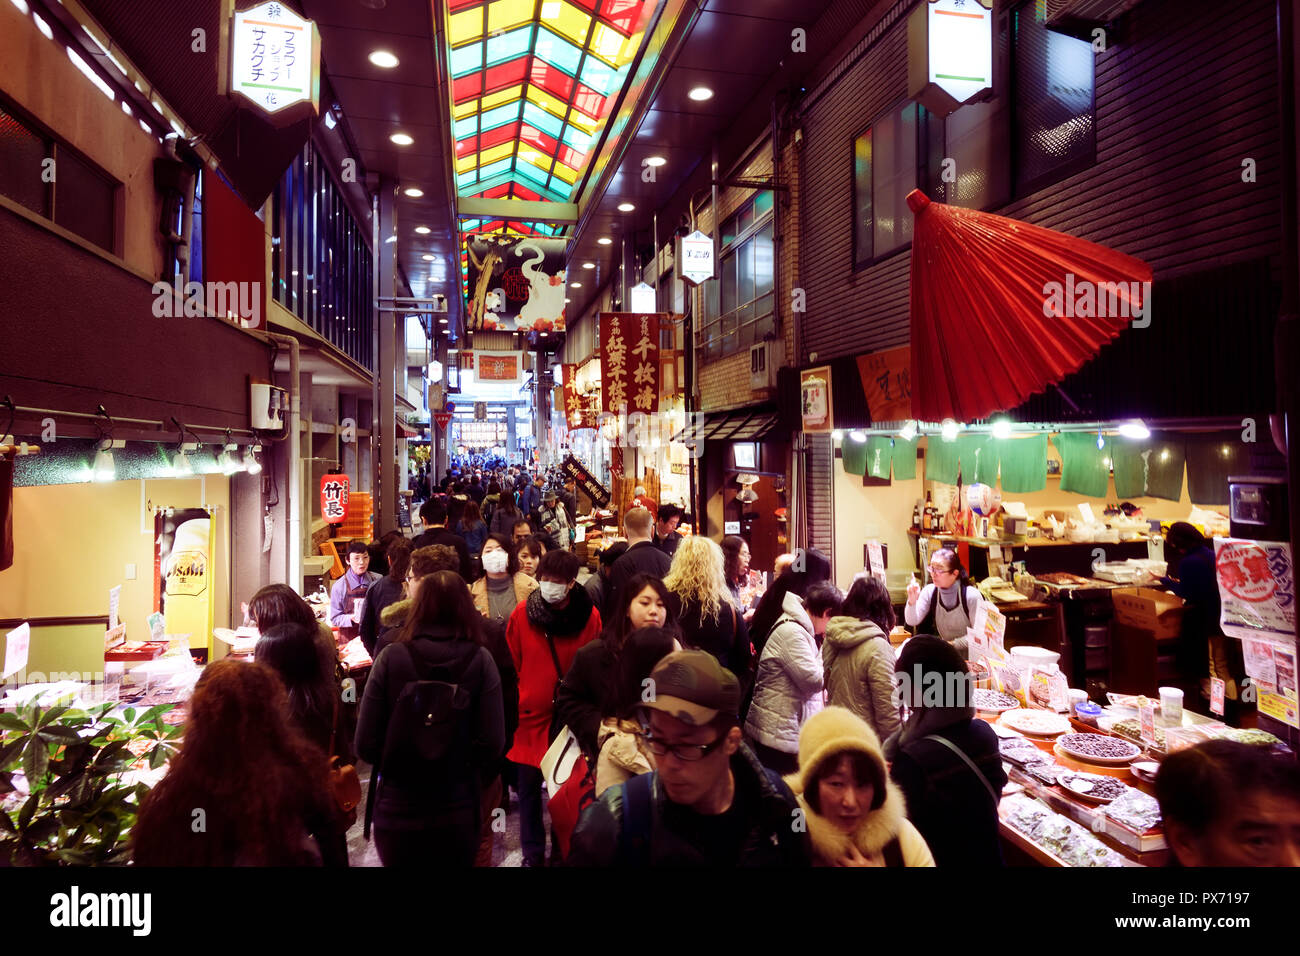 Kyoto Nishiki Markt Einkaufsviertel, die berühmten historischen Lebensmittelmarkt besetzt mit Menschen und viele Anbieter die Geschäfte in der Innenstadt von Kyoto, Japan, 2017. Stockfoto